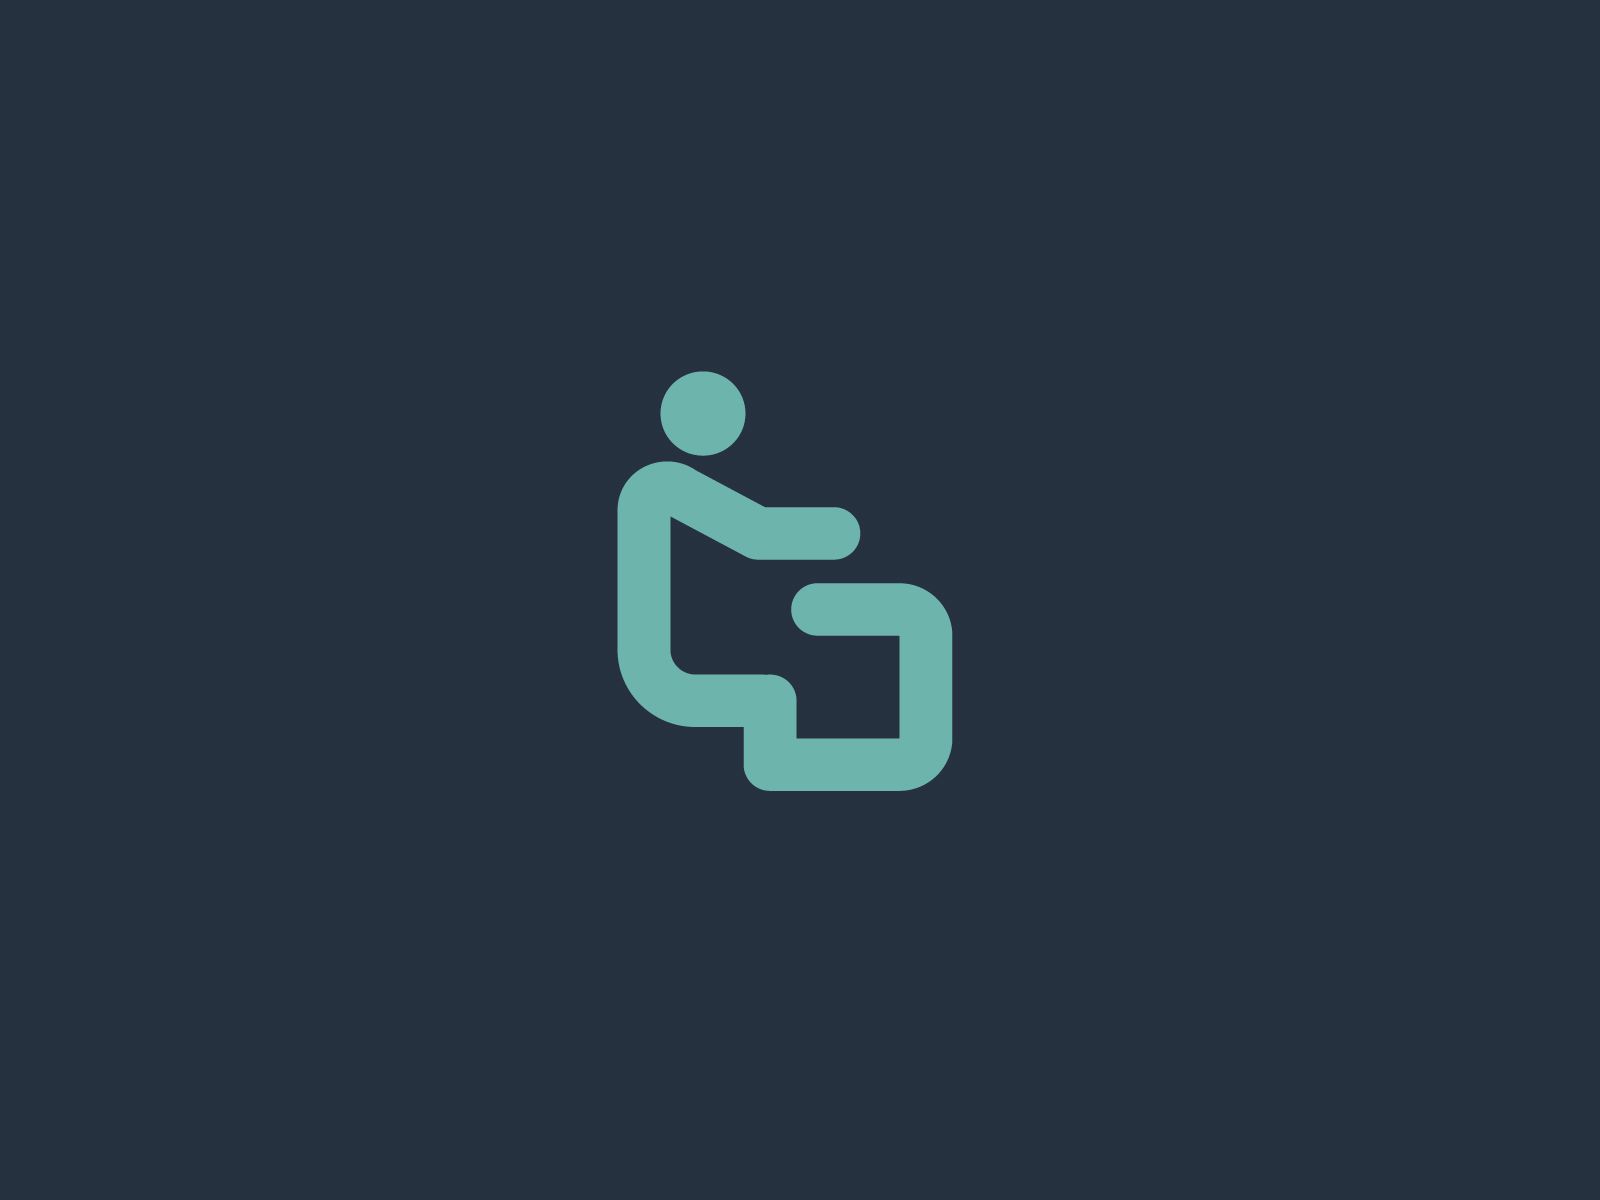 Логотип для GeekStaffer - дизайнер U4po4mak